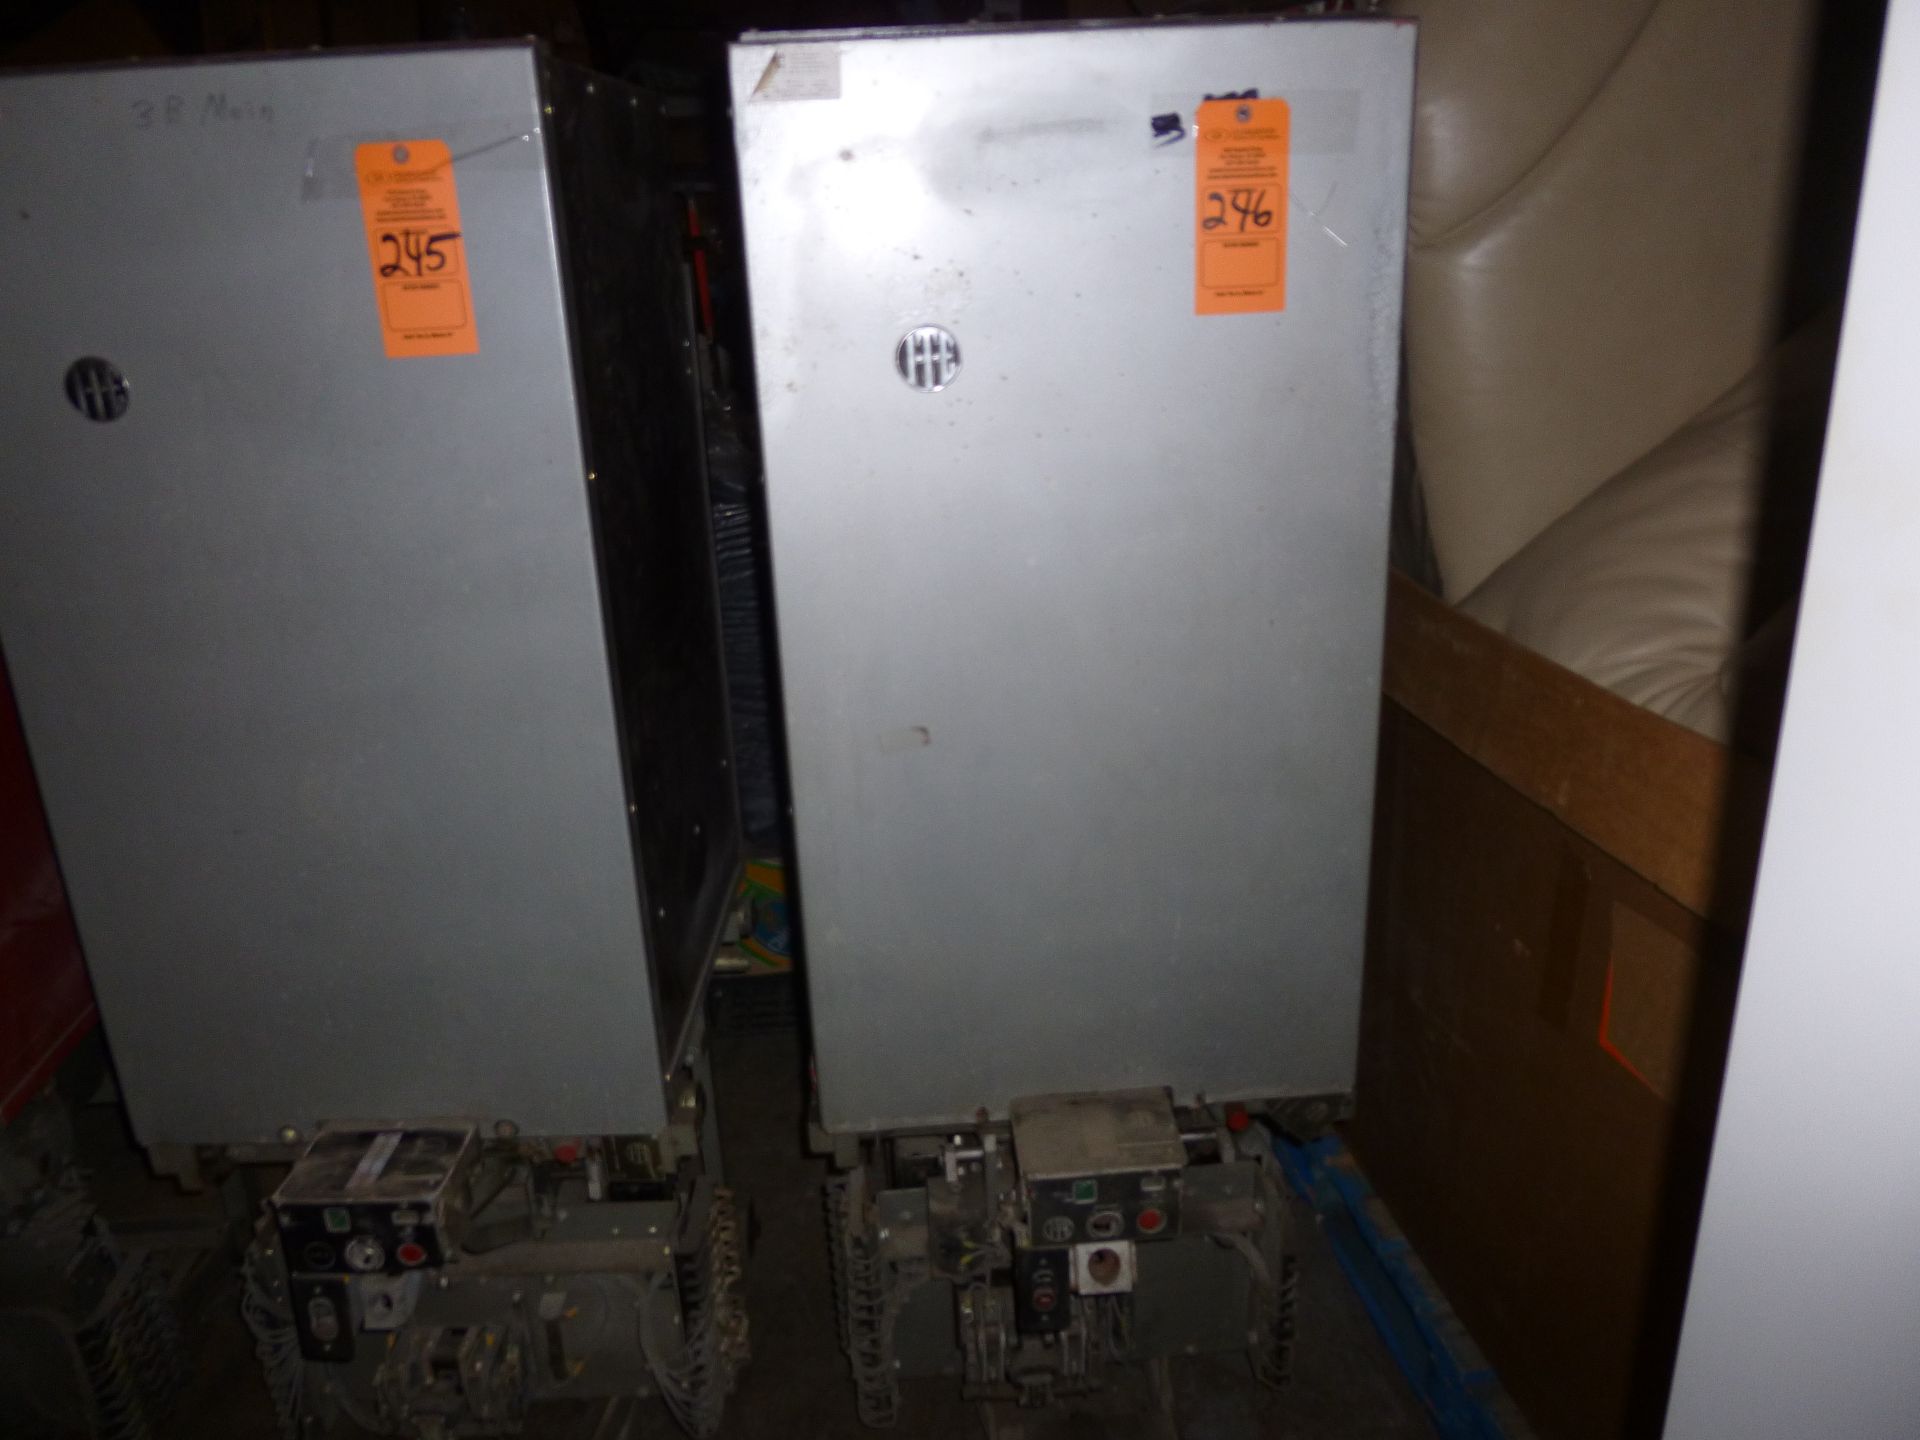 ITE circuit breaker type 5HV-250, 1200amp, rated 4.16kva